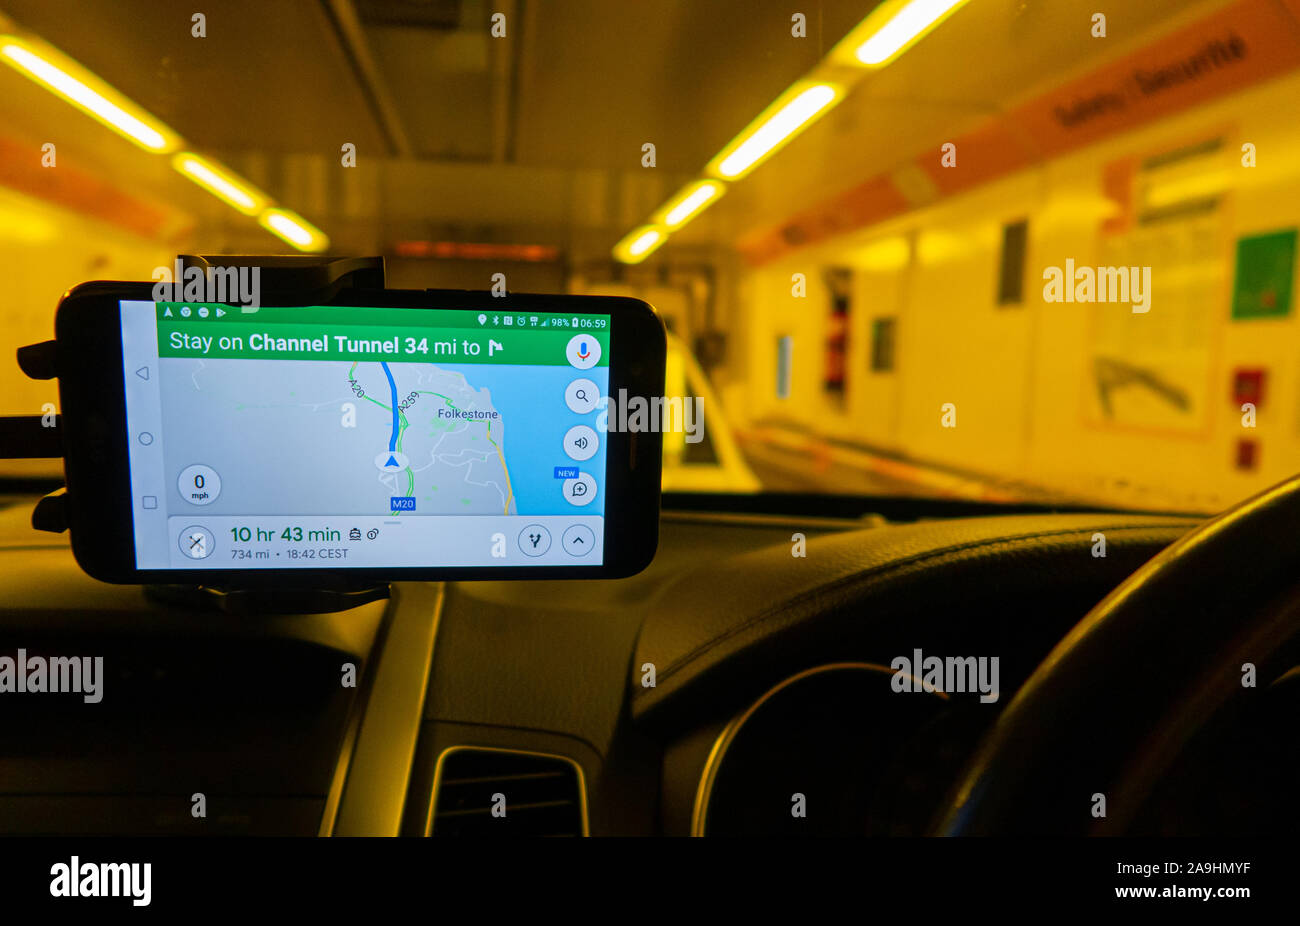 Blick von innen auf ein Auto eines Shuttle-Wagens, der die Personenkraftwagen durch den Kanaltunnel transkortiert. Ein GPS-Satellitennavigationsgerät für die Armaturenbrettmontage zeigt den Weg. Stockfoto